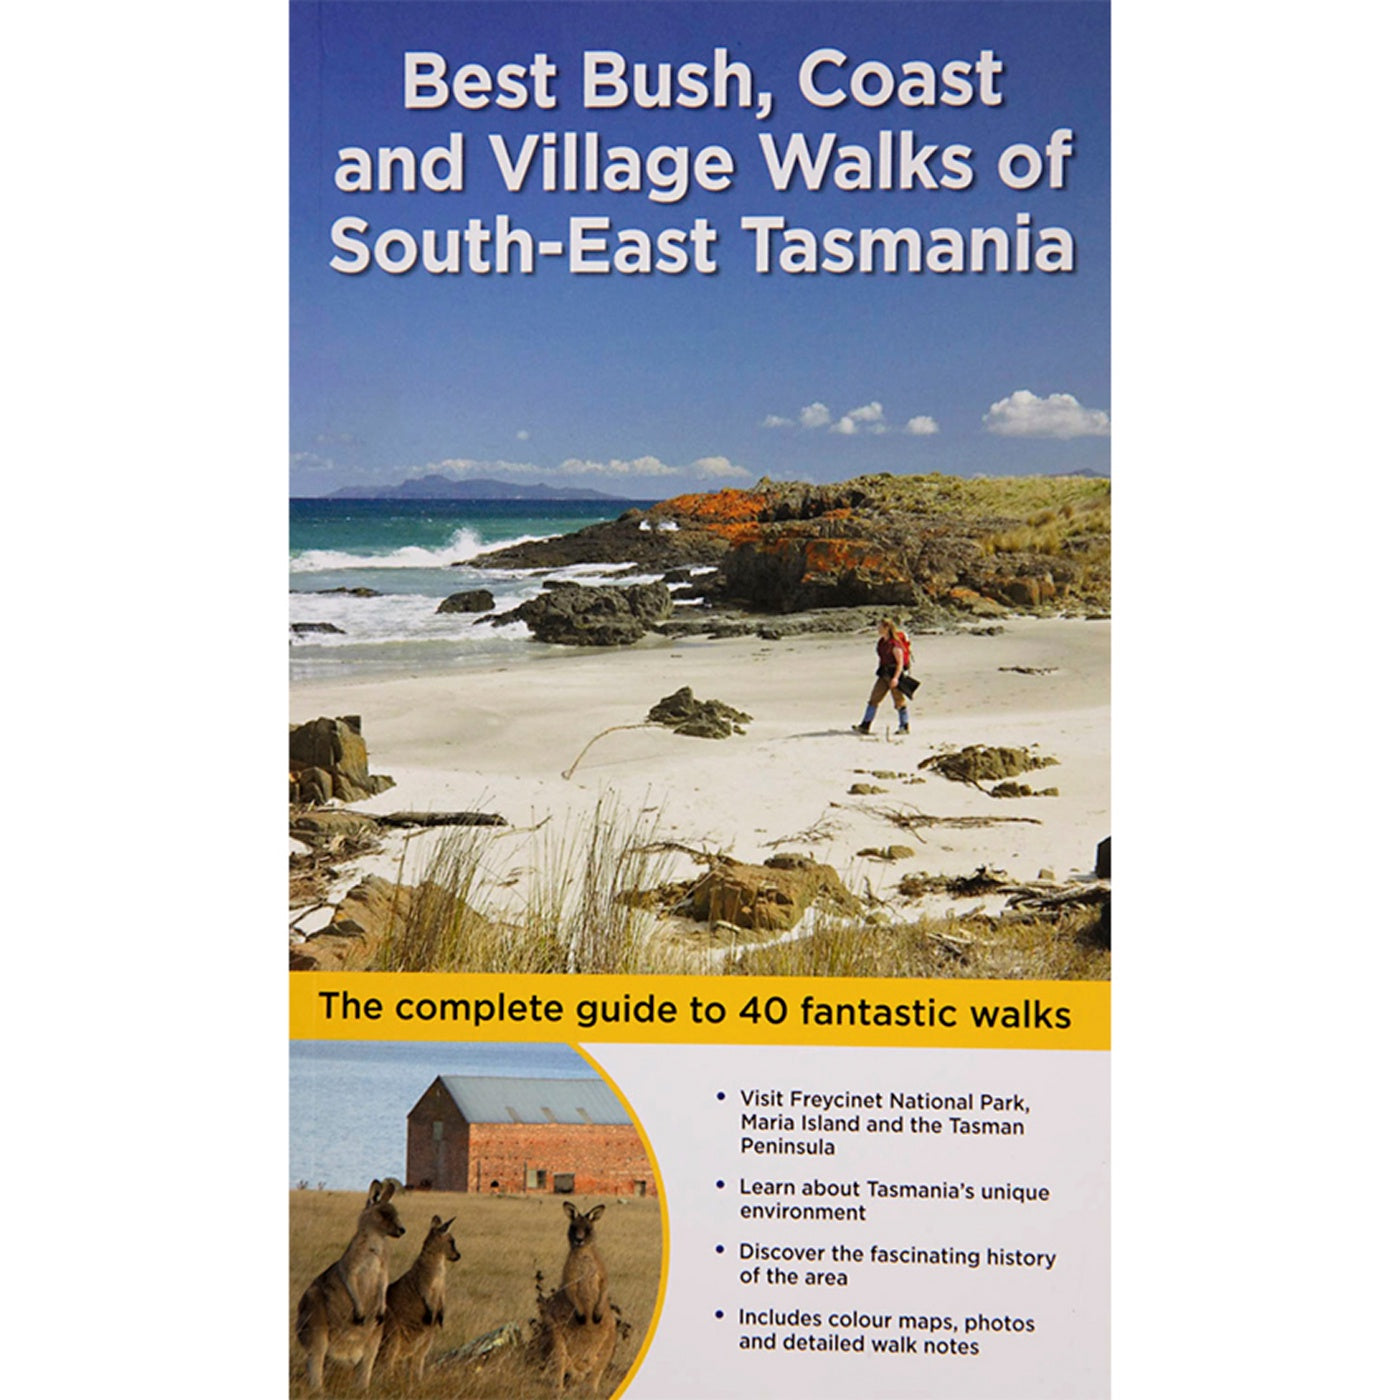 Best Bush, Coast and Village Walks of South-East Tasmania